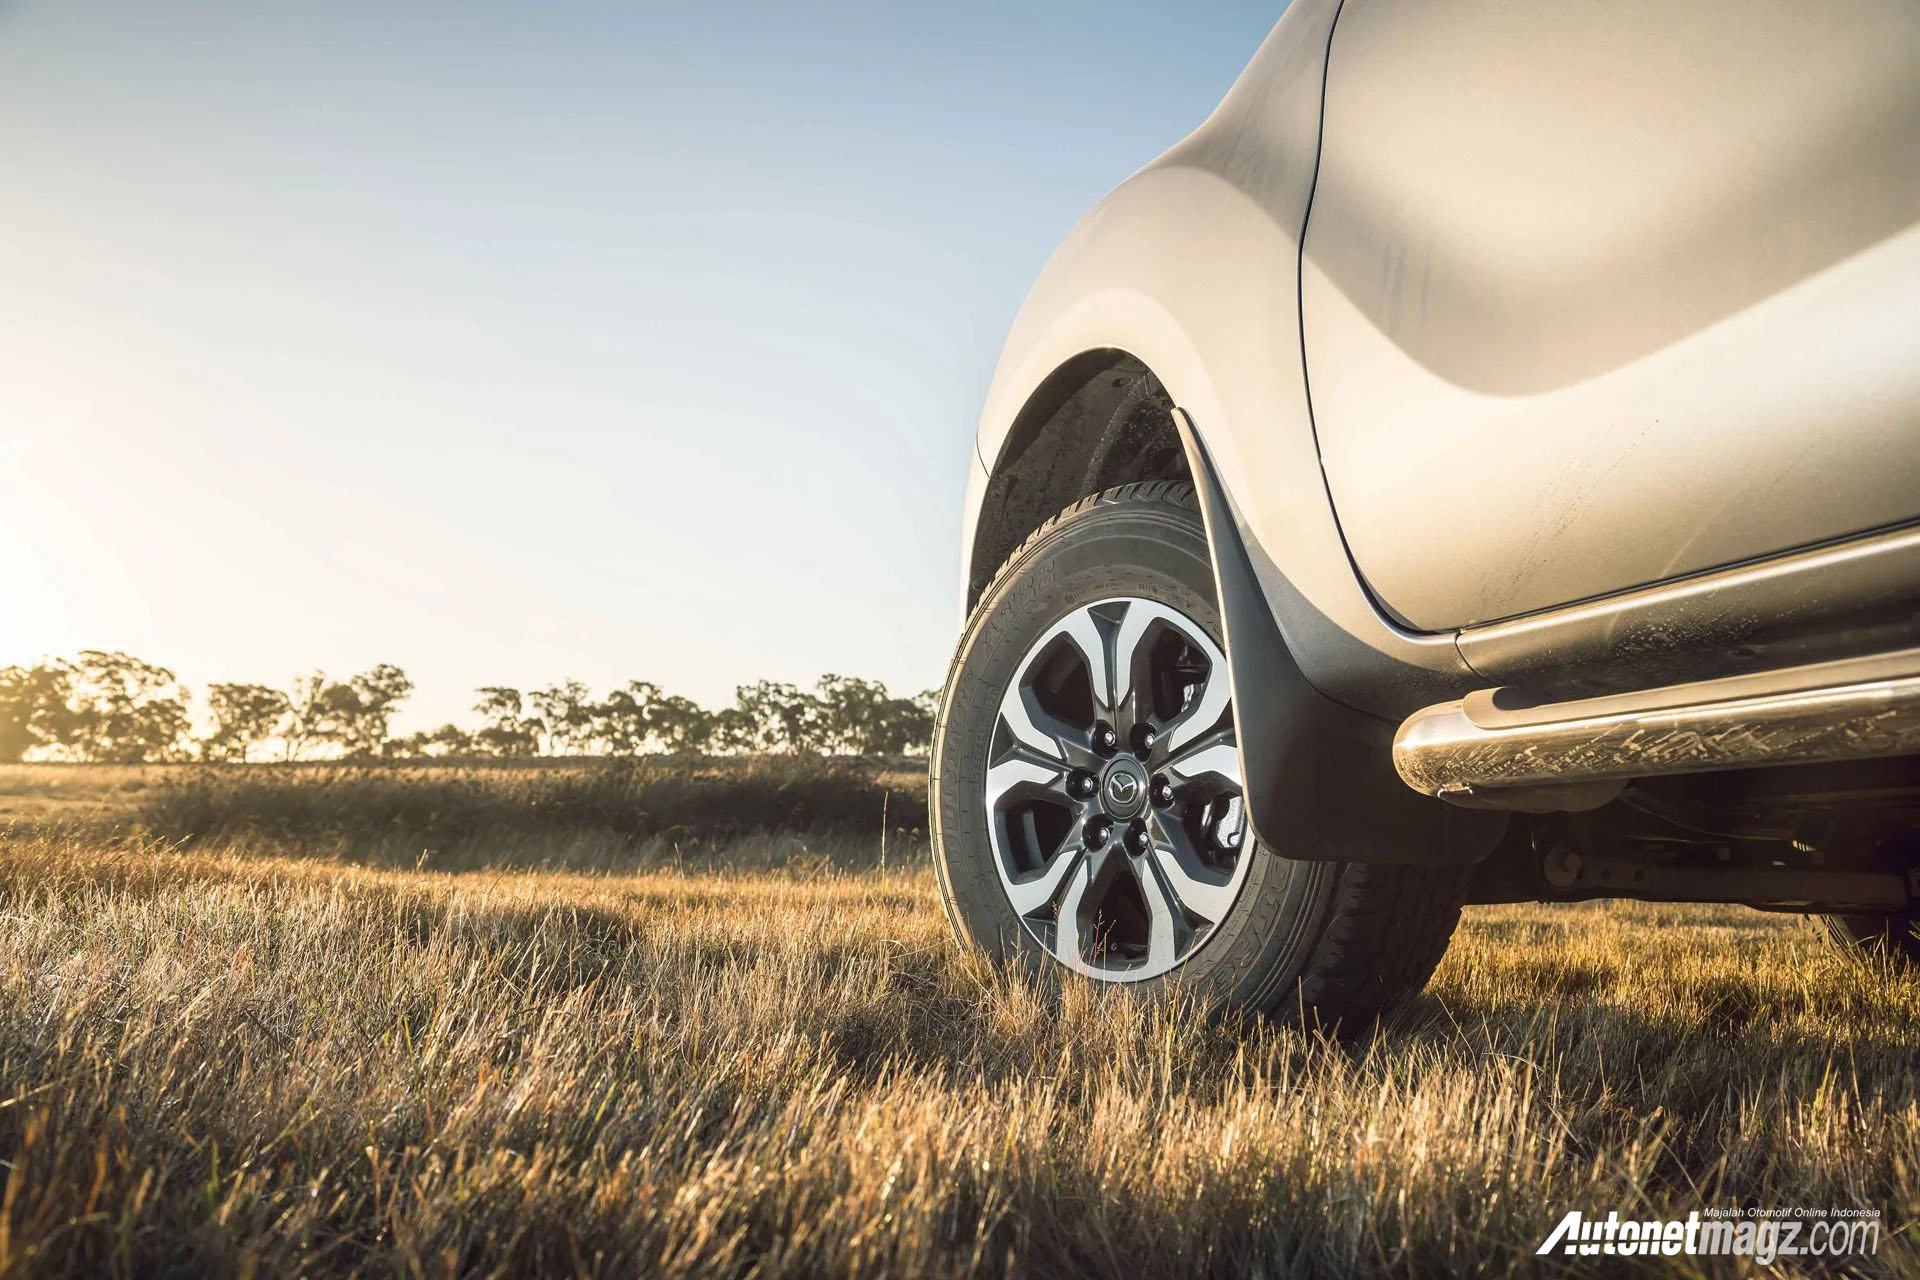 Berita, Teaser Mazda BT-50 2018: Mazda BT-50 Terbaru Akan Muncul di Australia Bulan Mei